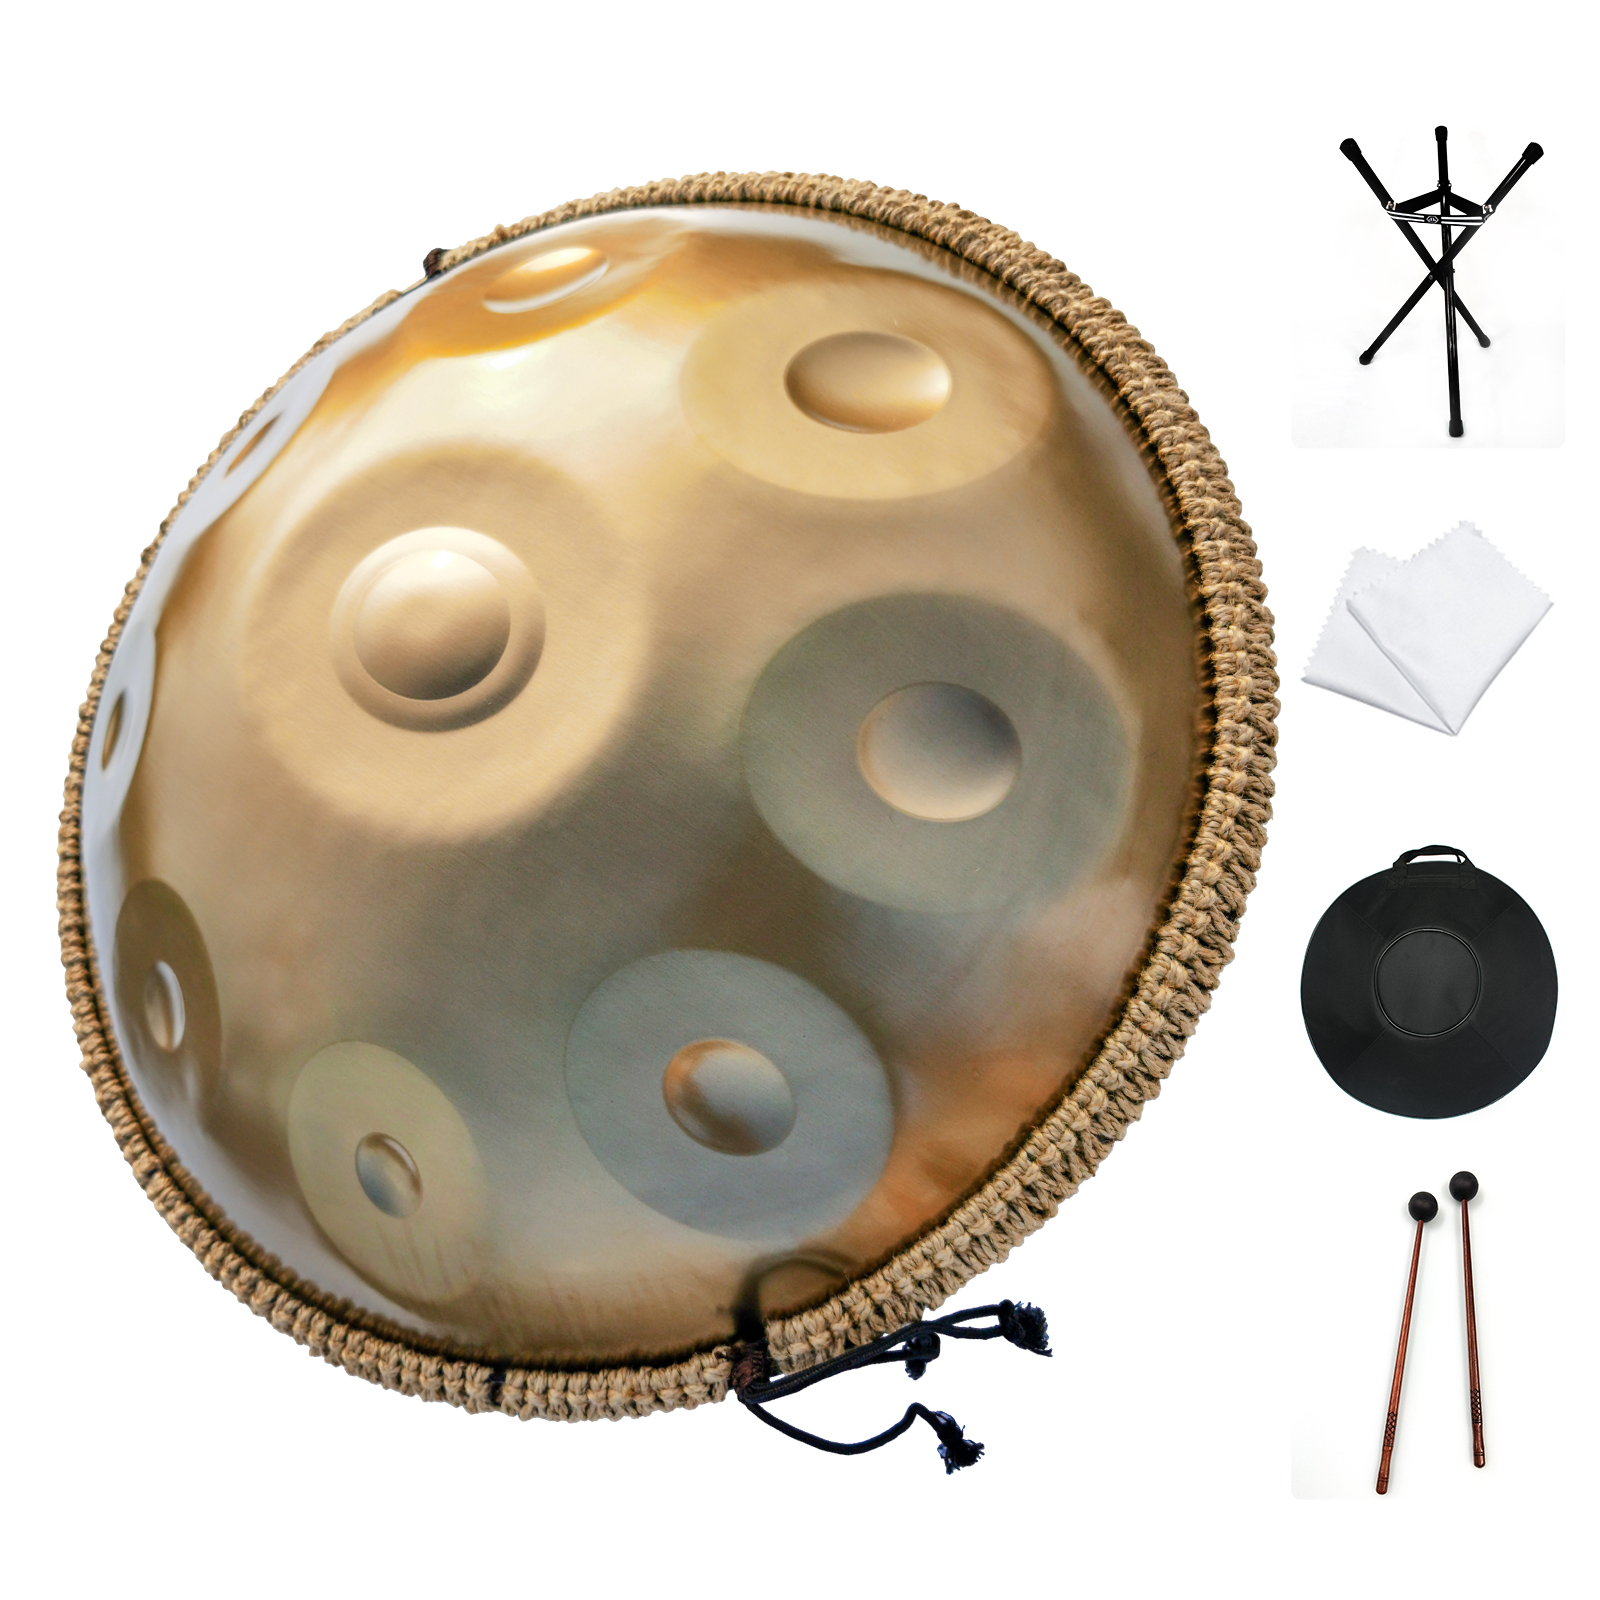 กลองด้ามใน D Minor 9 Notes 22 นิ้ว Steel Hand Drum with Soft Hand Pan Bag, 2 handpan mallet, Handpan Stand, dust-free cloth, gold